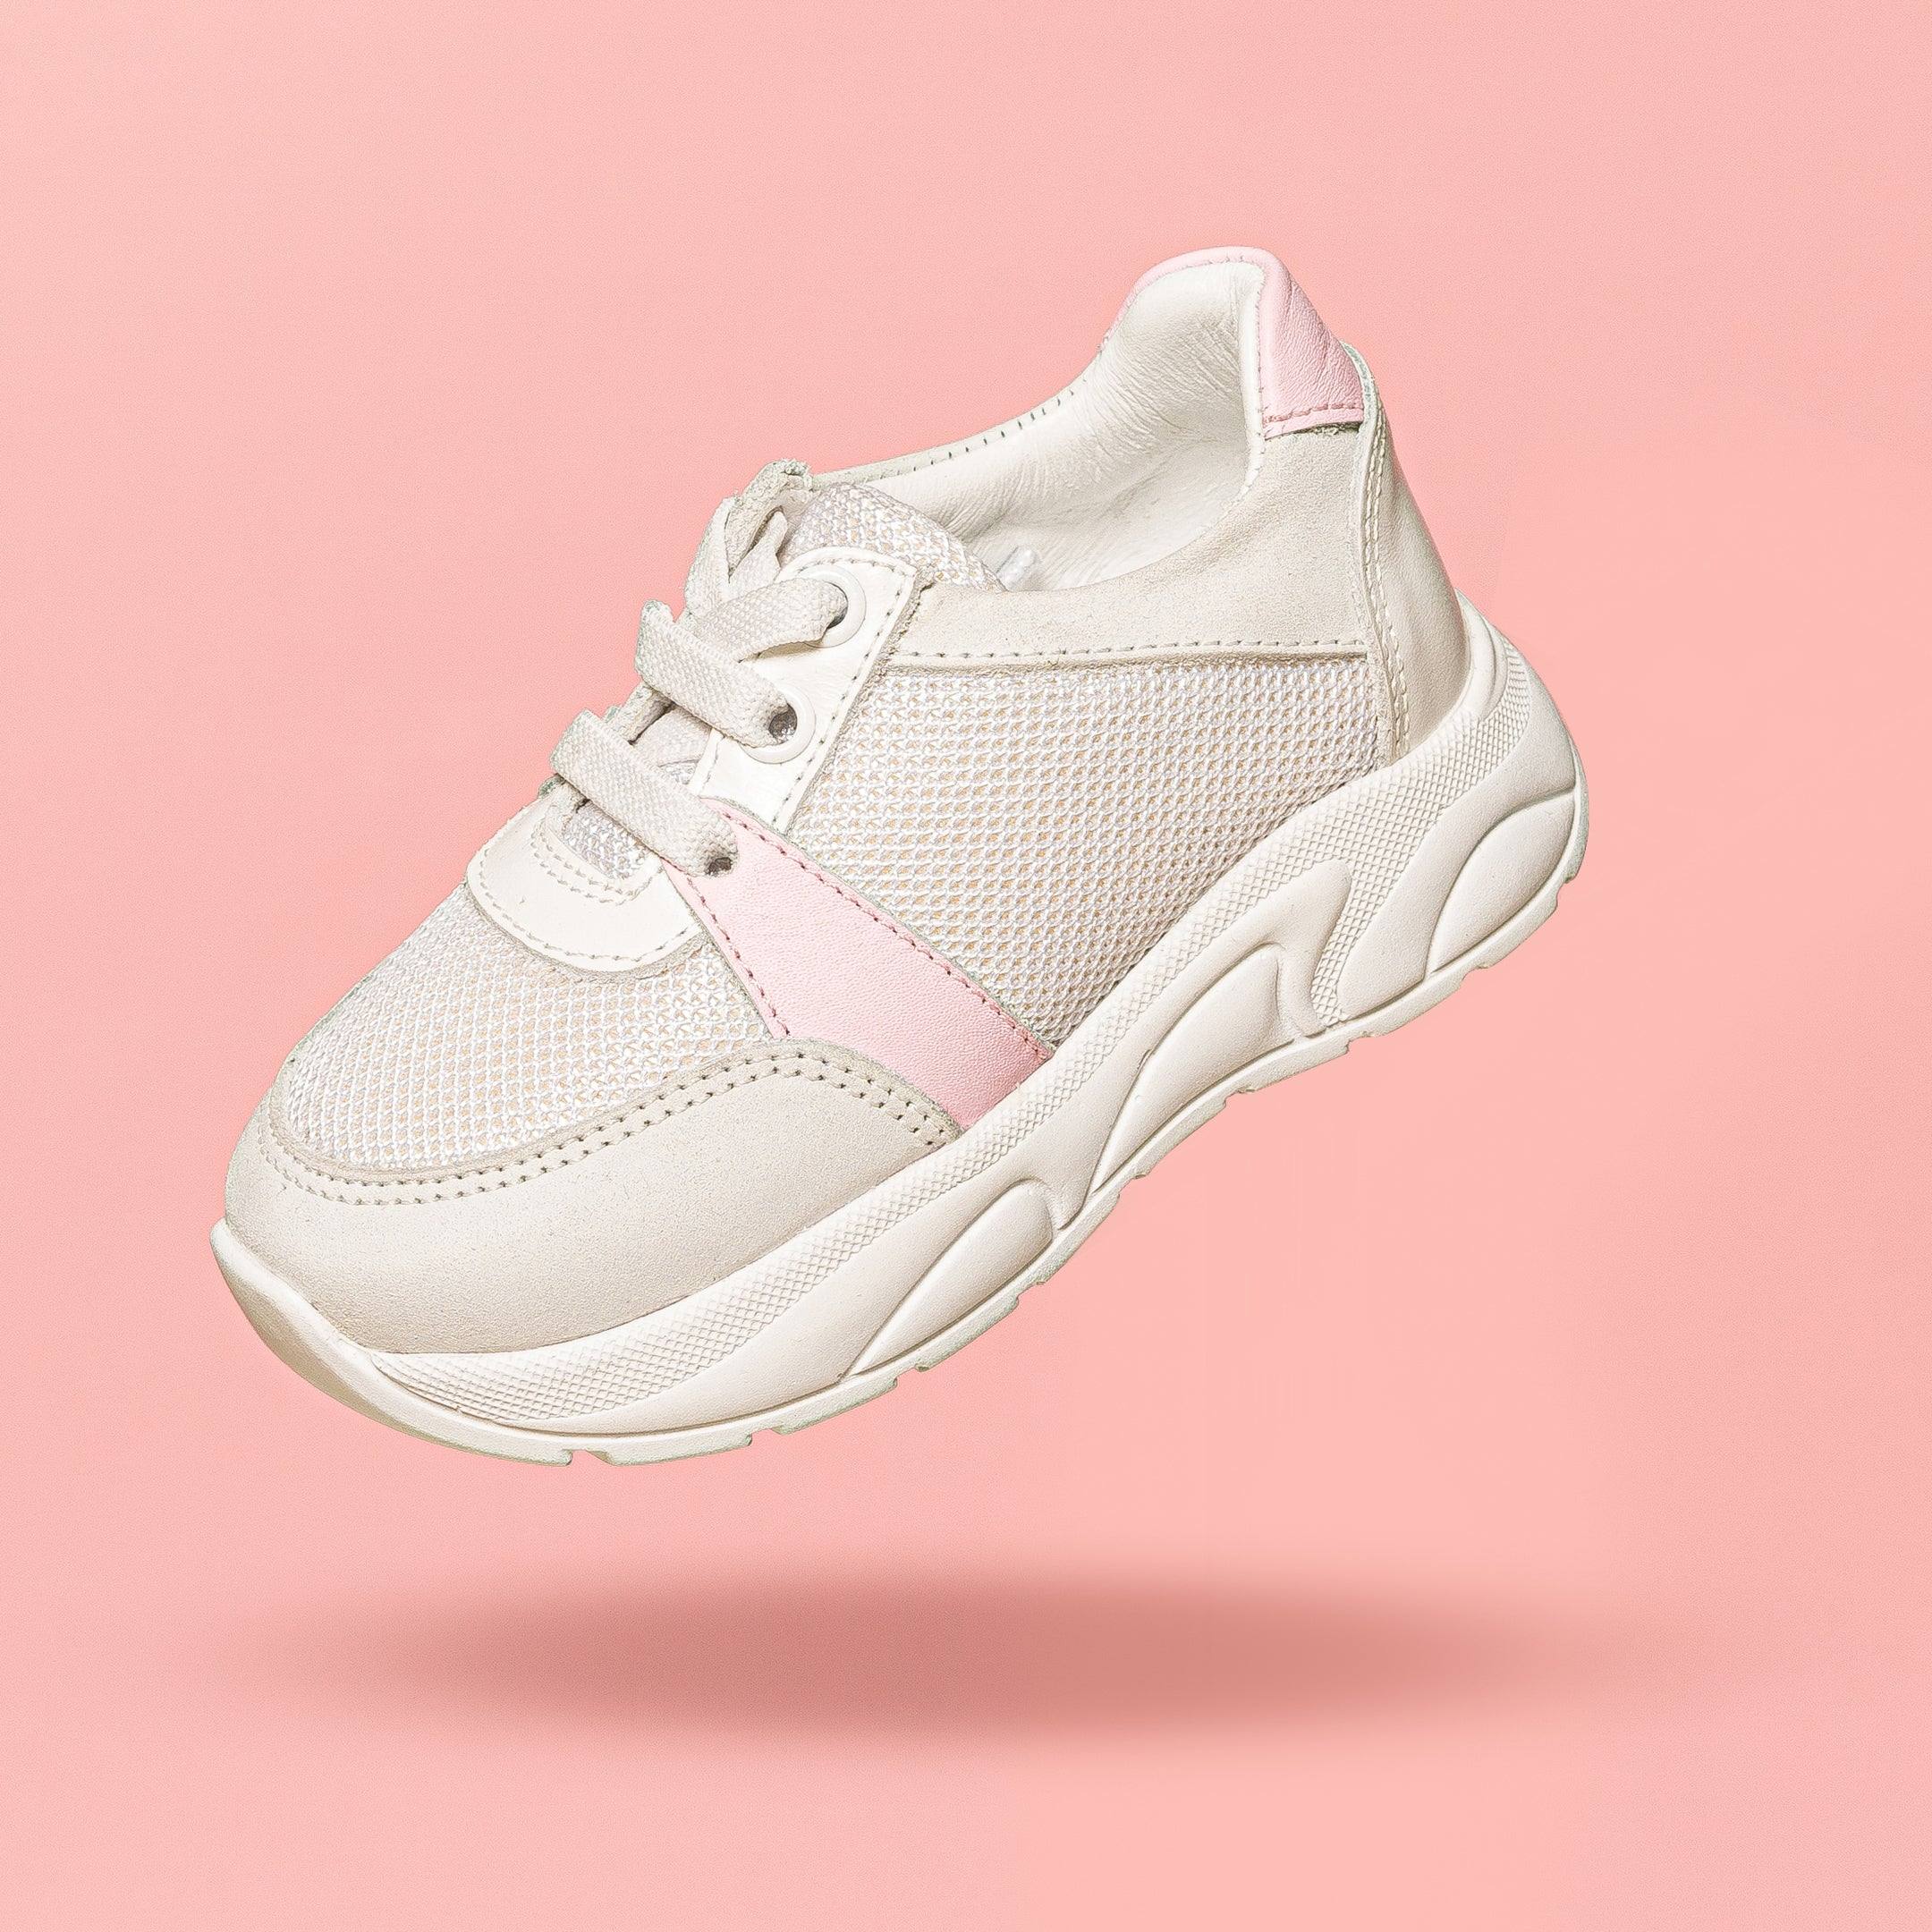 Run - Pink Sneakers - Run - Pink Sneakers - 21 - Merli & Rose - Melymod